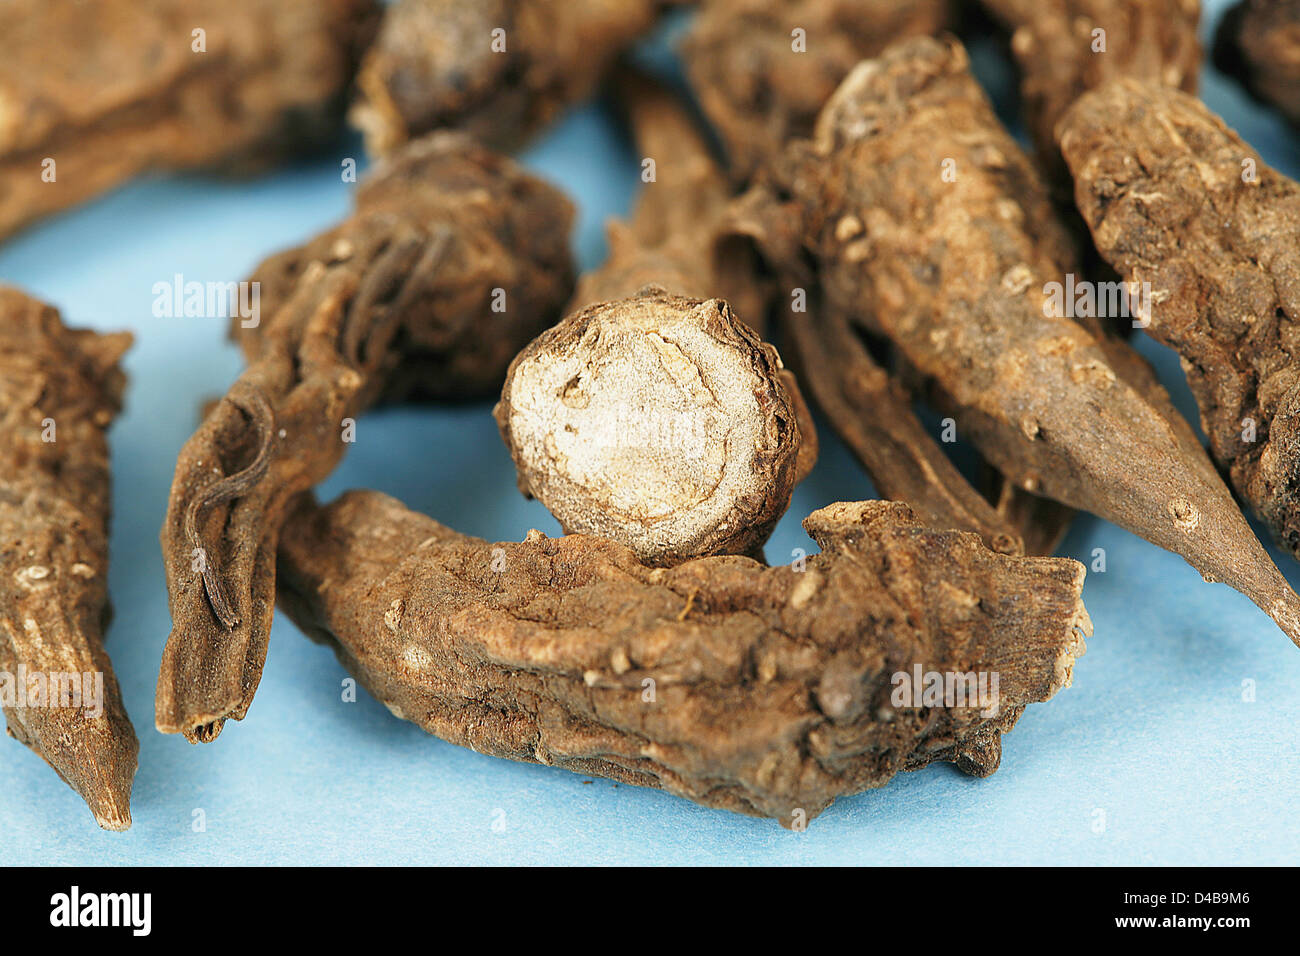 Substance toxique Aconit Aconitum napellus racines tubéreuses séché acontine contient des alcaloïdes potentiellement mortels causes connexes Banque D'Images